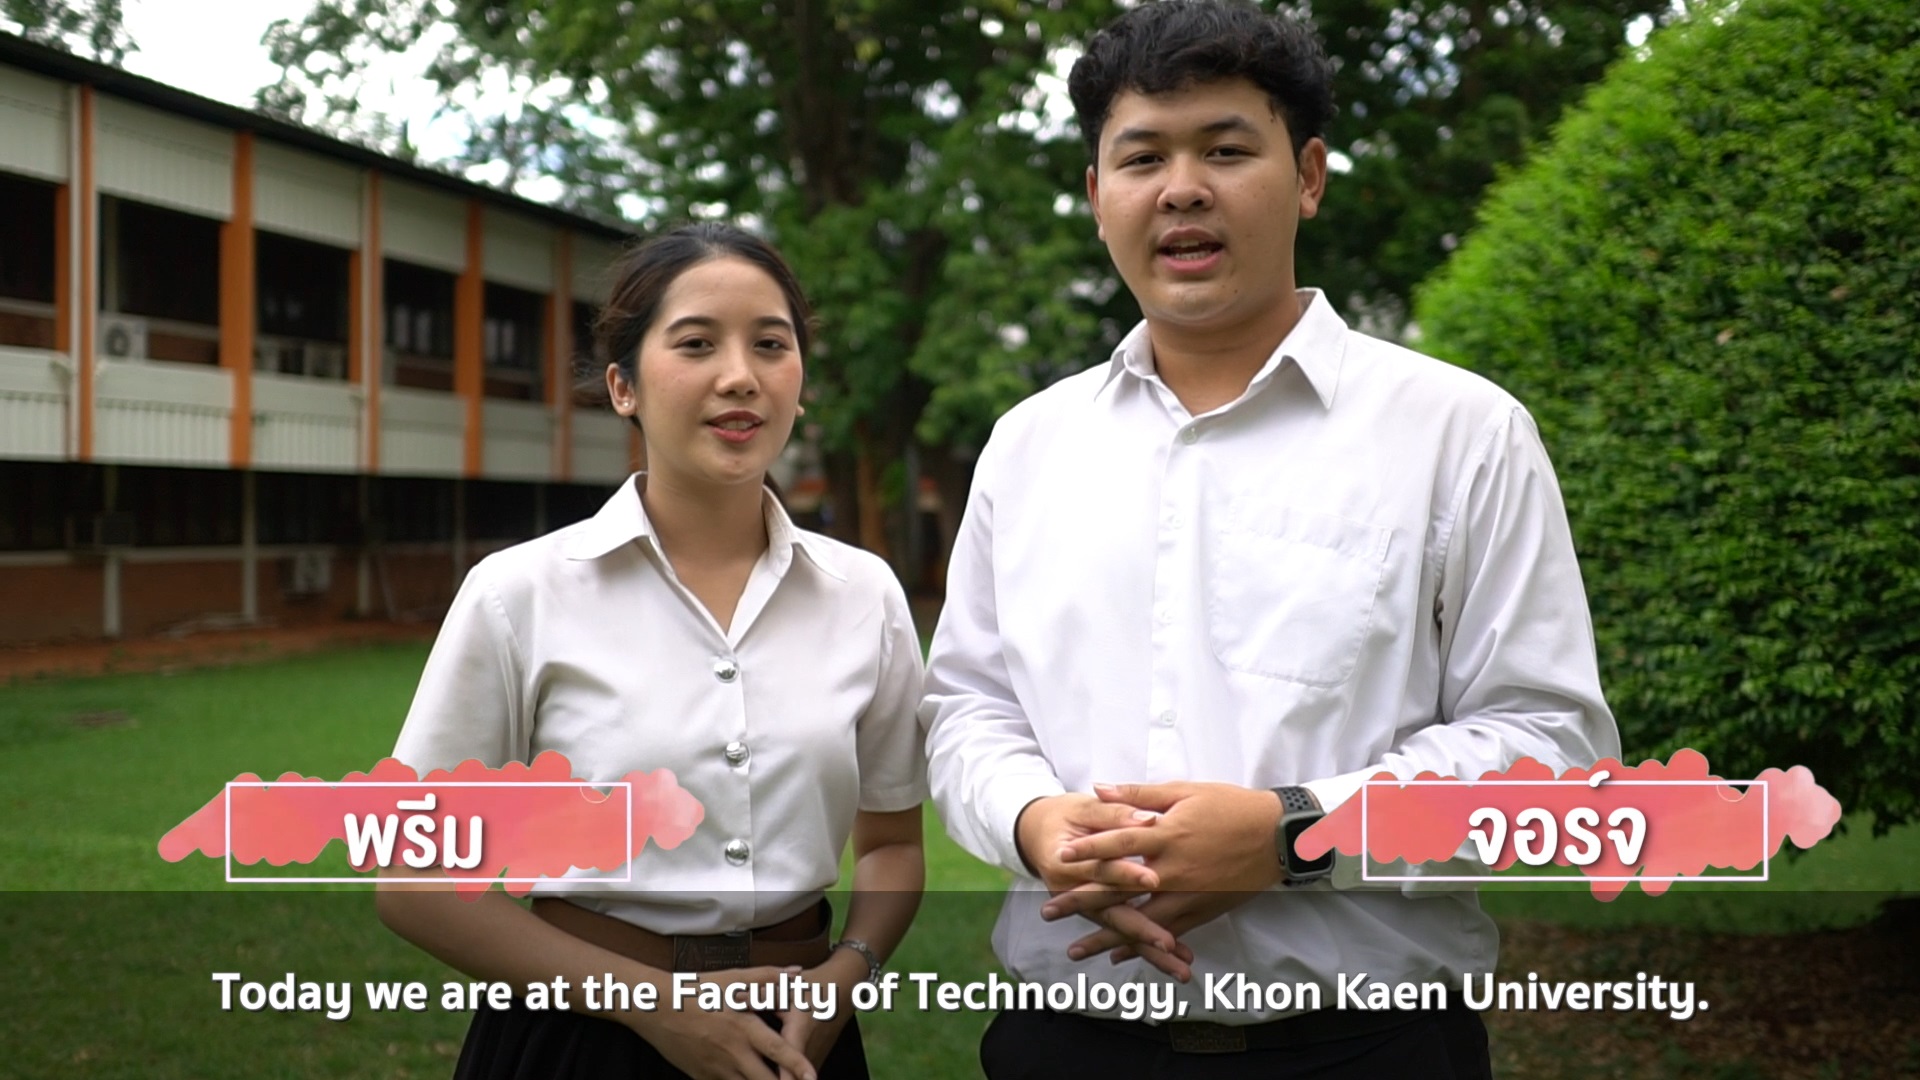 วีดีโอแนะนำสาขาวิชา คณะเทคโนโลยี มหาวิทยาลัยขอนแก่น Introducing the Faculty of Technology, Khon Kaen University.